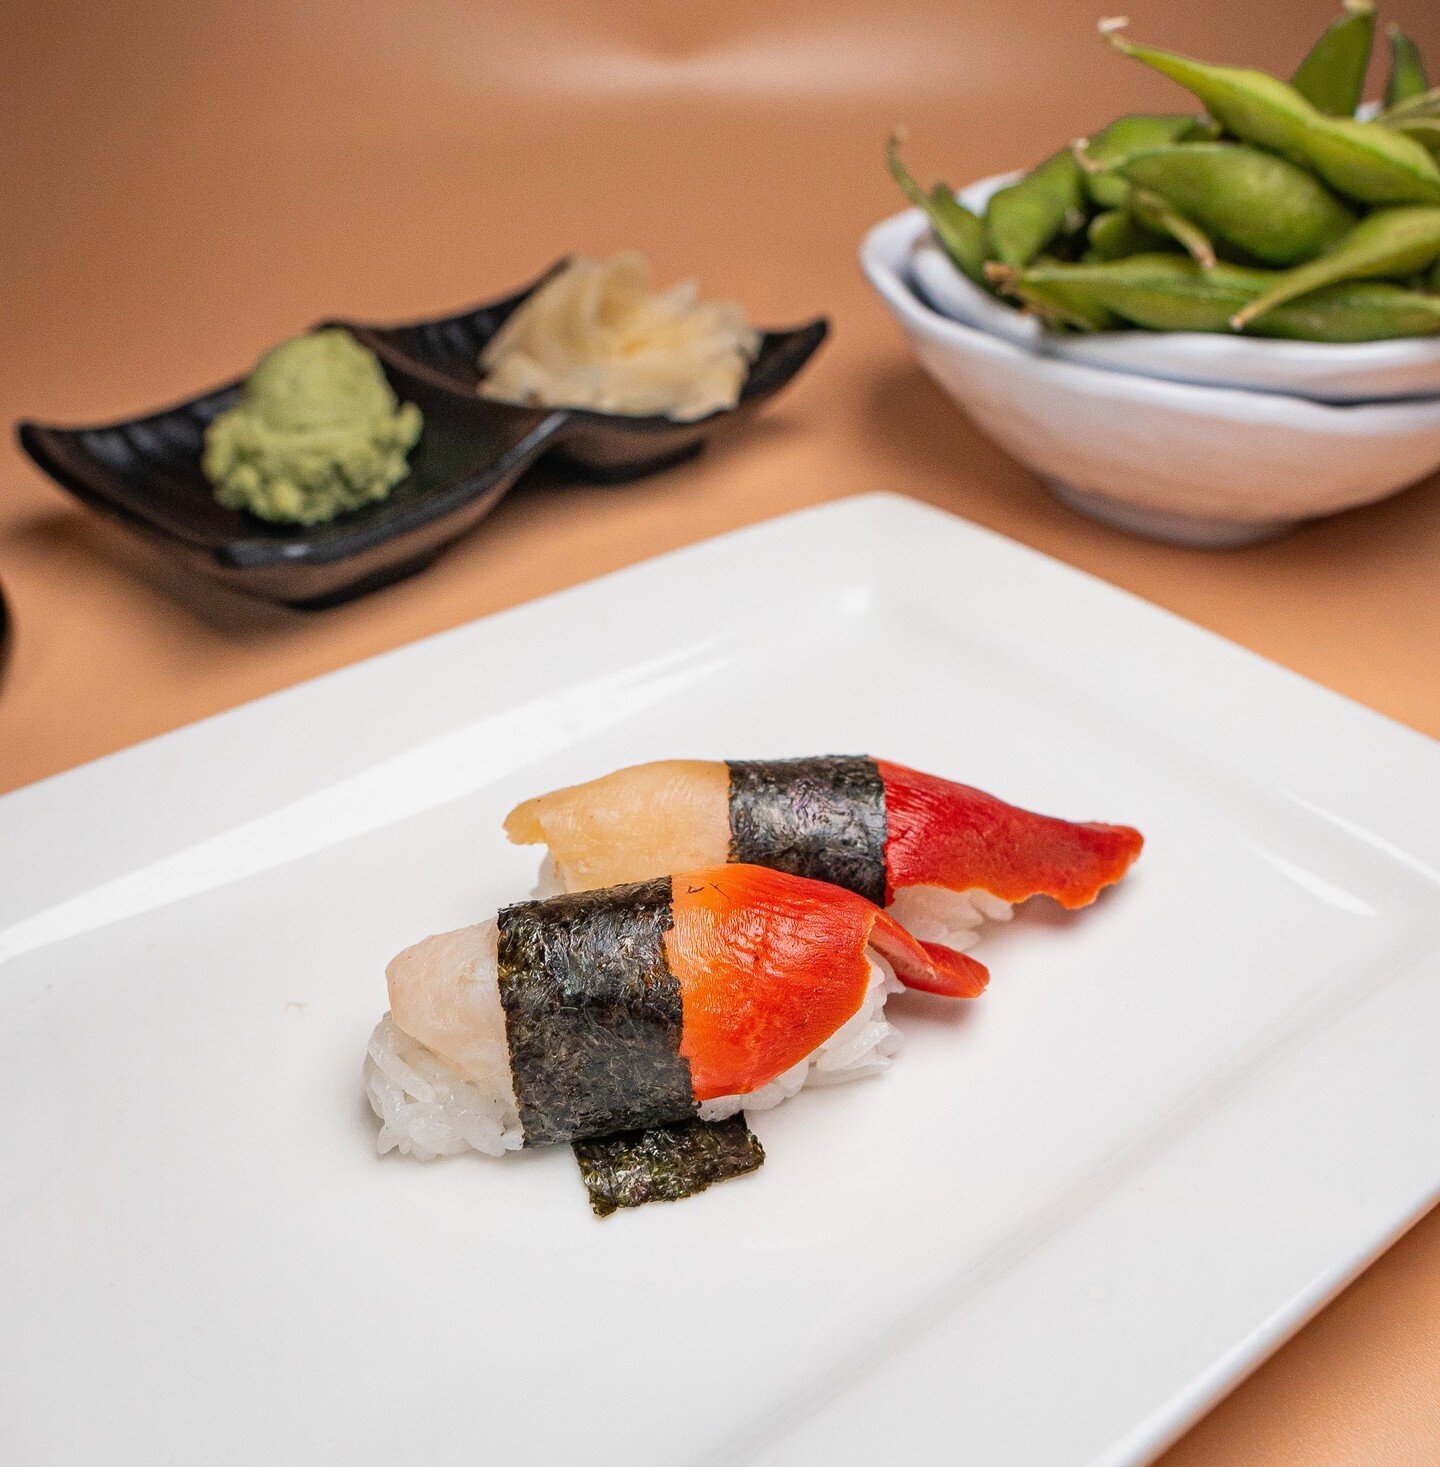 Let's soy 'cheers' to sushi nights and good company! ITADAKIMASU! #UmamiJourney 🍣🥢 

◾️◽️◾️◽️◾️◽️◾️◽️◾️◽️ 
🍣 𝗔𝗬𝗖𝗘 𝗦𝗨𝗦𝗛𝗜 𝗛𝗢𝗨𝗦𝗘 𝗚𝗢𝗬𝗘𝗠𝗢𝗡 
⏰ ᴅᴀɪʟʏ: 12:00 ᴘᴍ - 11:00 ᴘᴍ 
⏰ ʟᴀꜱᴛ ꜱᴇᴀᴛɪɴɢ ꜰᴏʀ ᴀʏᴄᴇ 10ᴘᴍ 
⏰ ʟᴀꜱᴛ ᴏʀᴅᴇʀ 10:30ᴘᴍ 
📍 5255 ꜱ